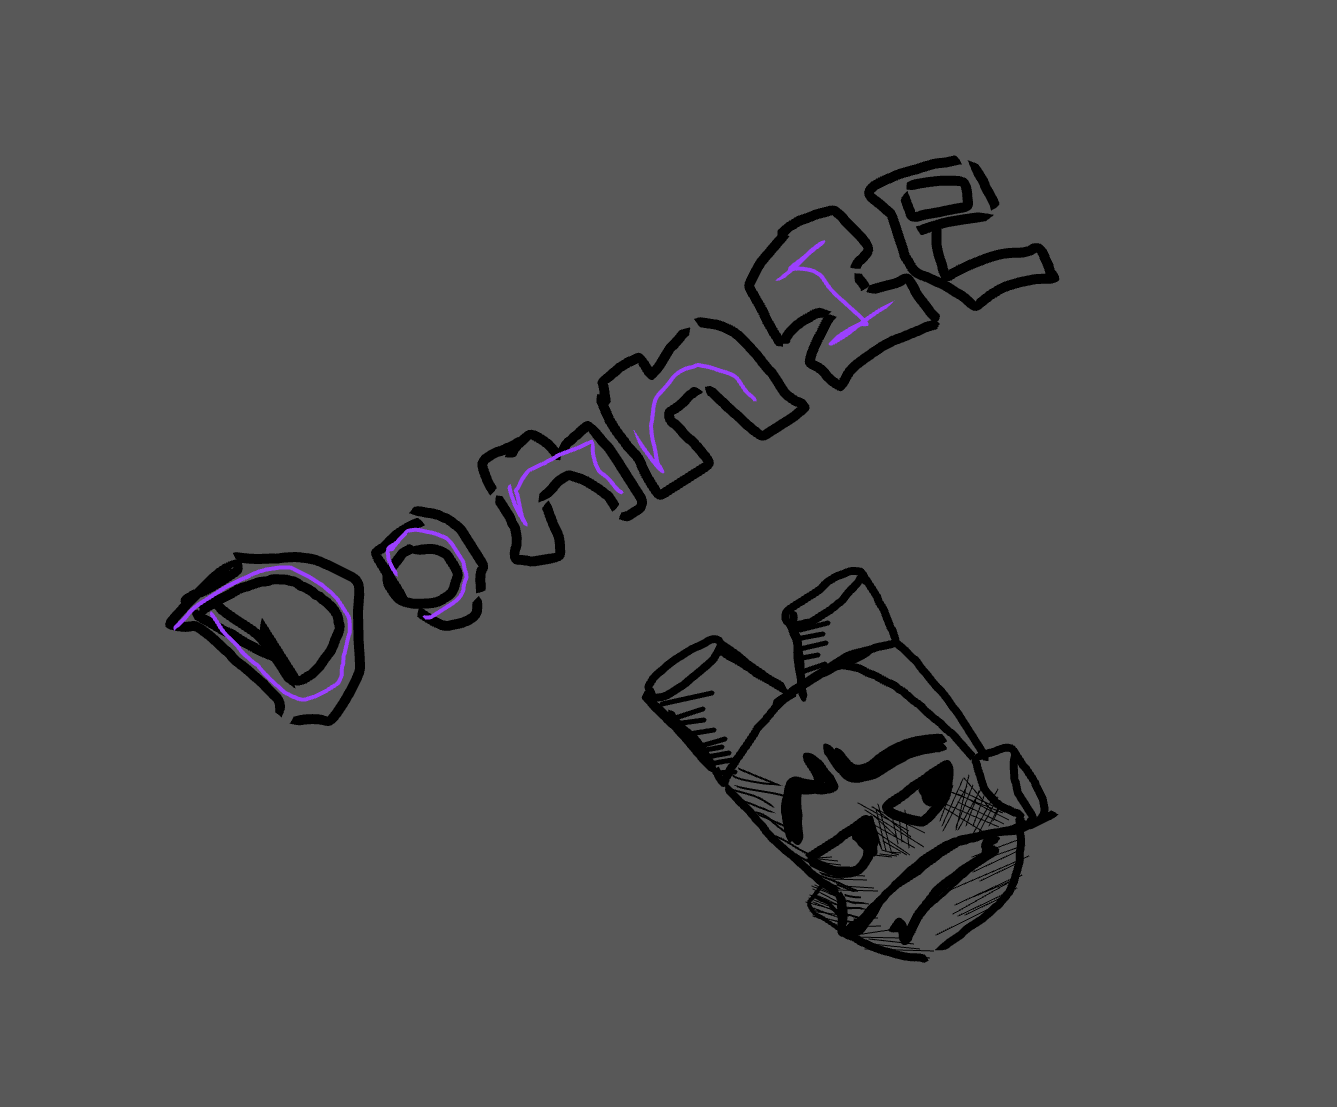 Donnie doodle